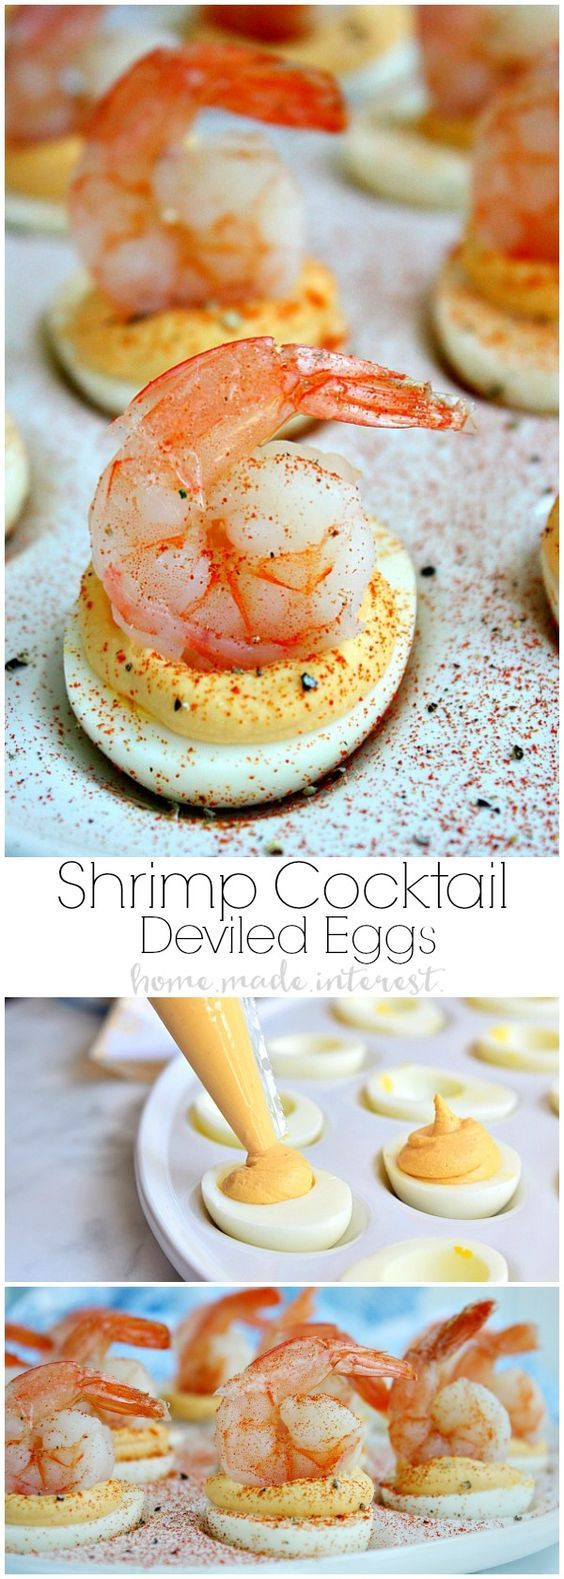 Best Seafood Appetizers
 Best 25 Seafood appetizers ideas on Pinterest